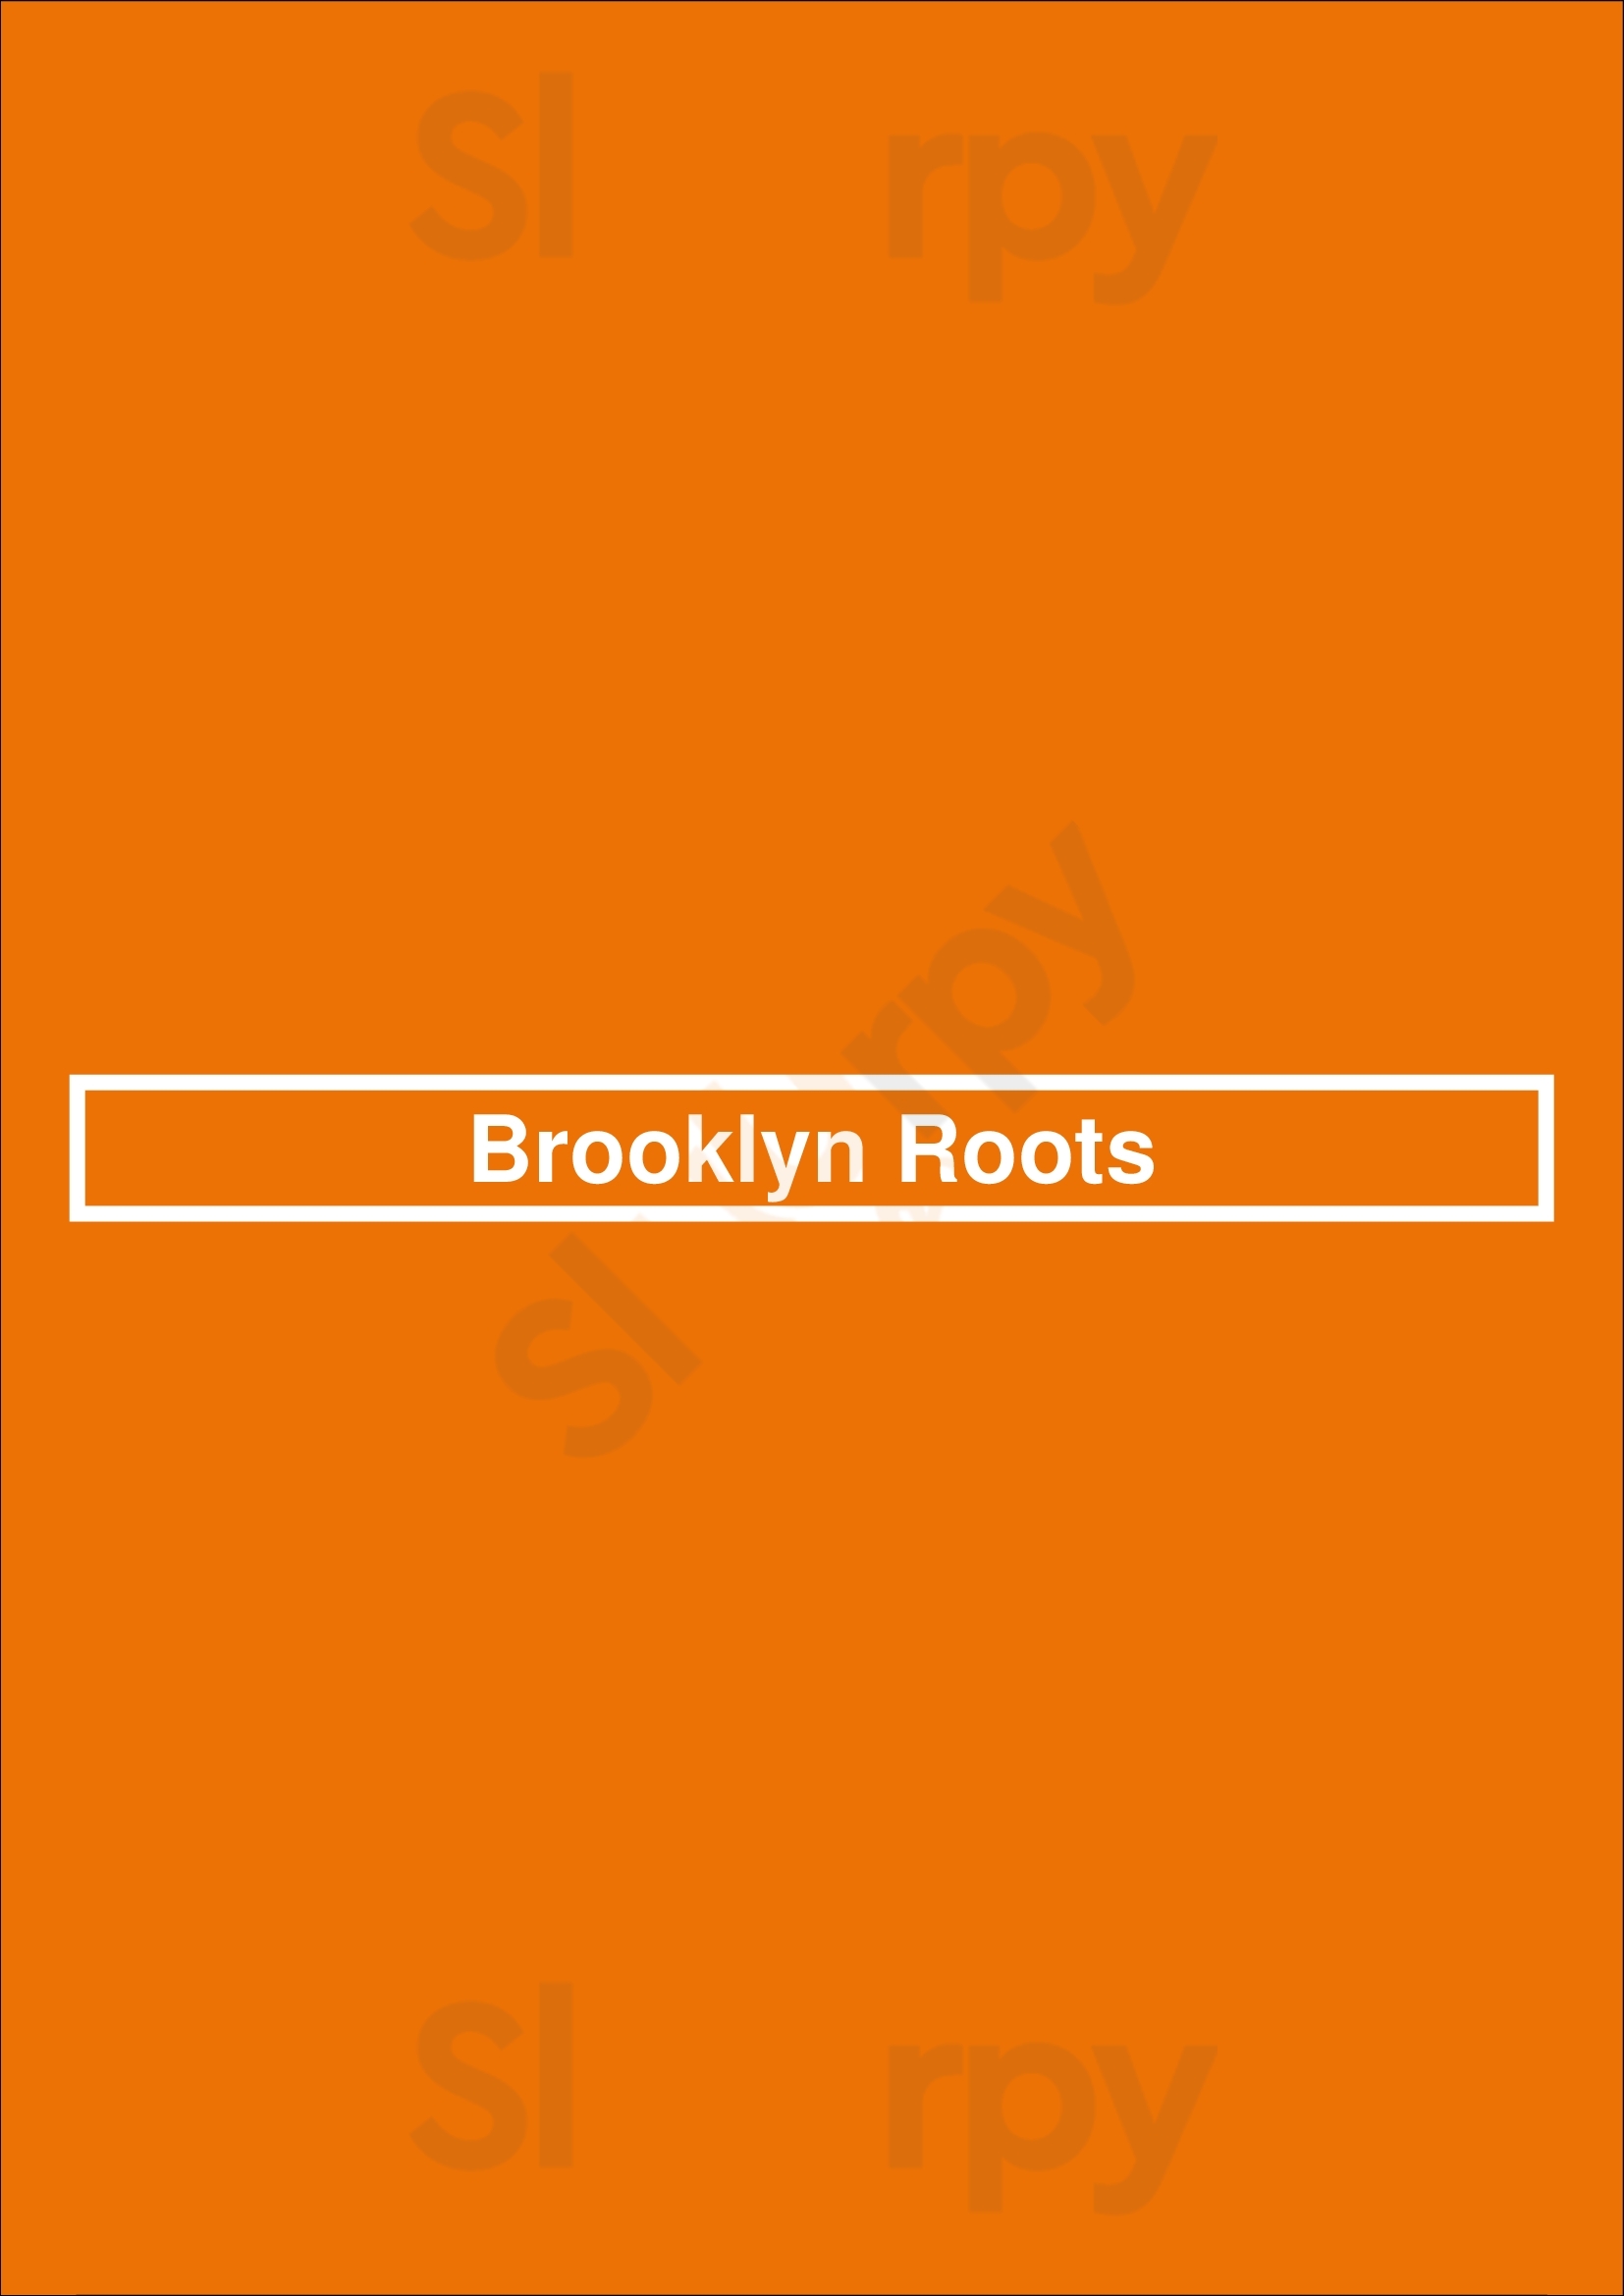 Brooklyn Roots Brooklyn Menu - 1